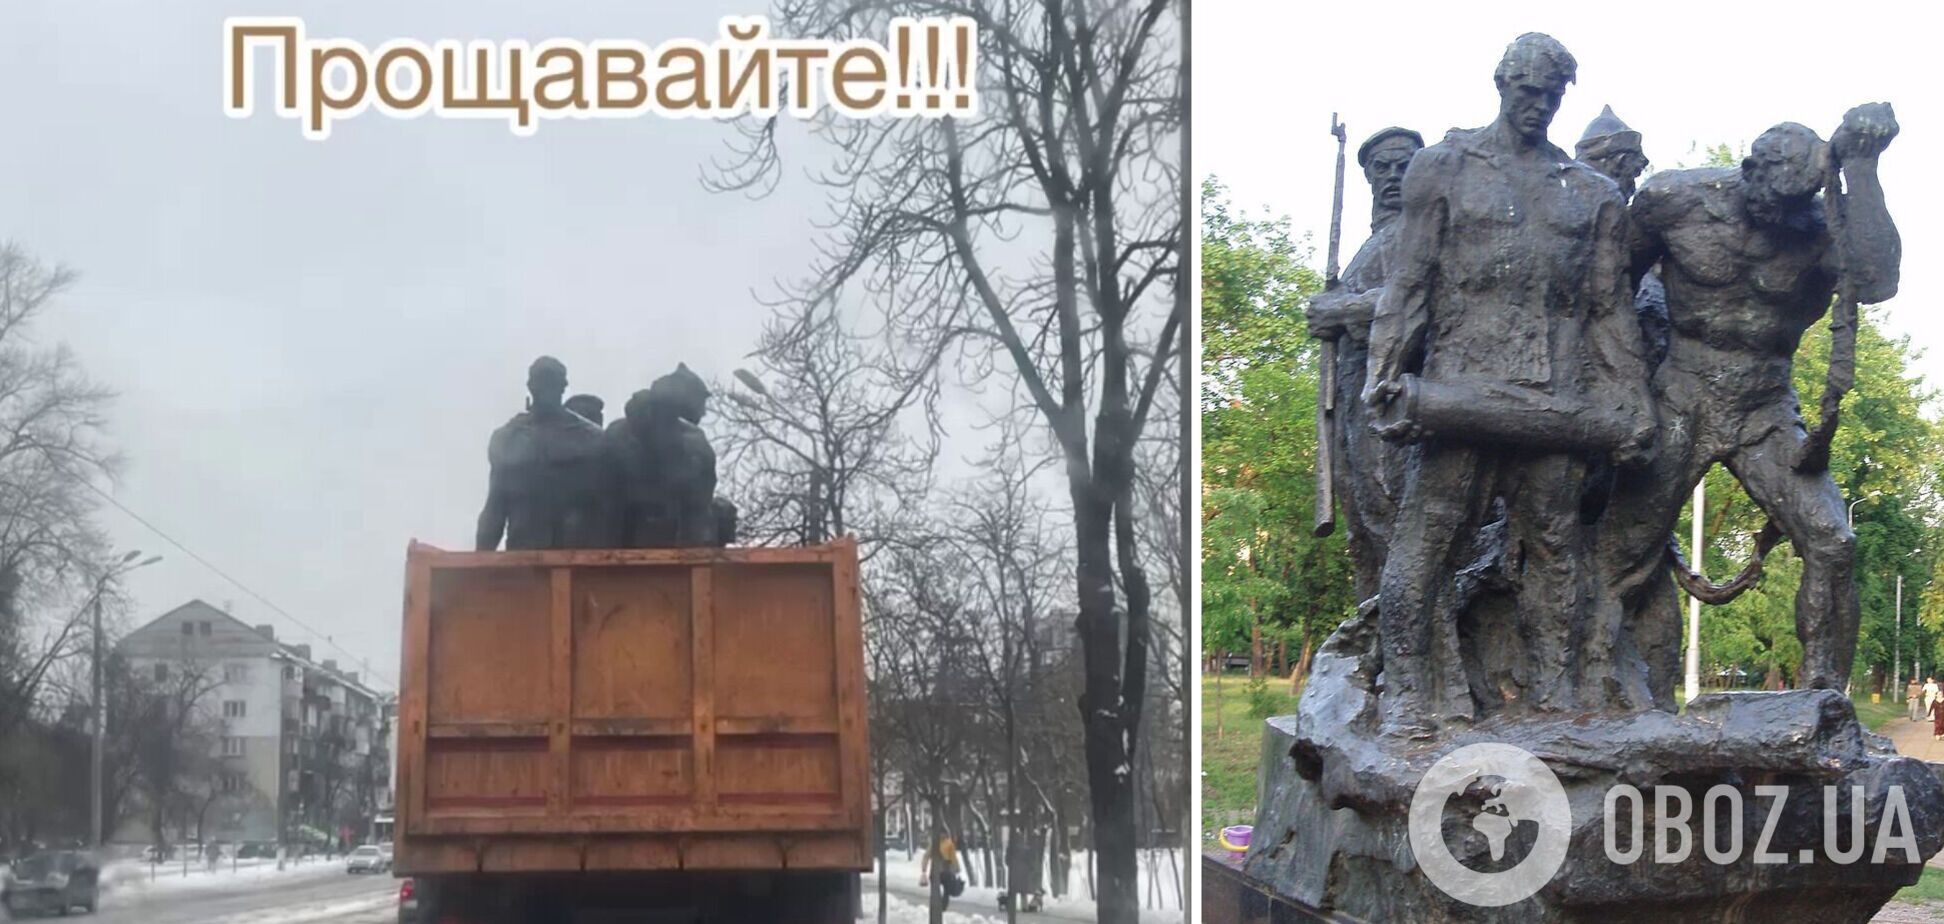 Комунальники прибрали ще один радянський пам’ятник